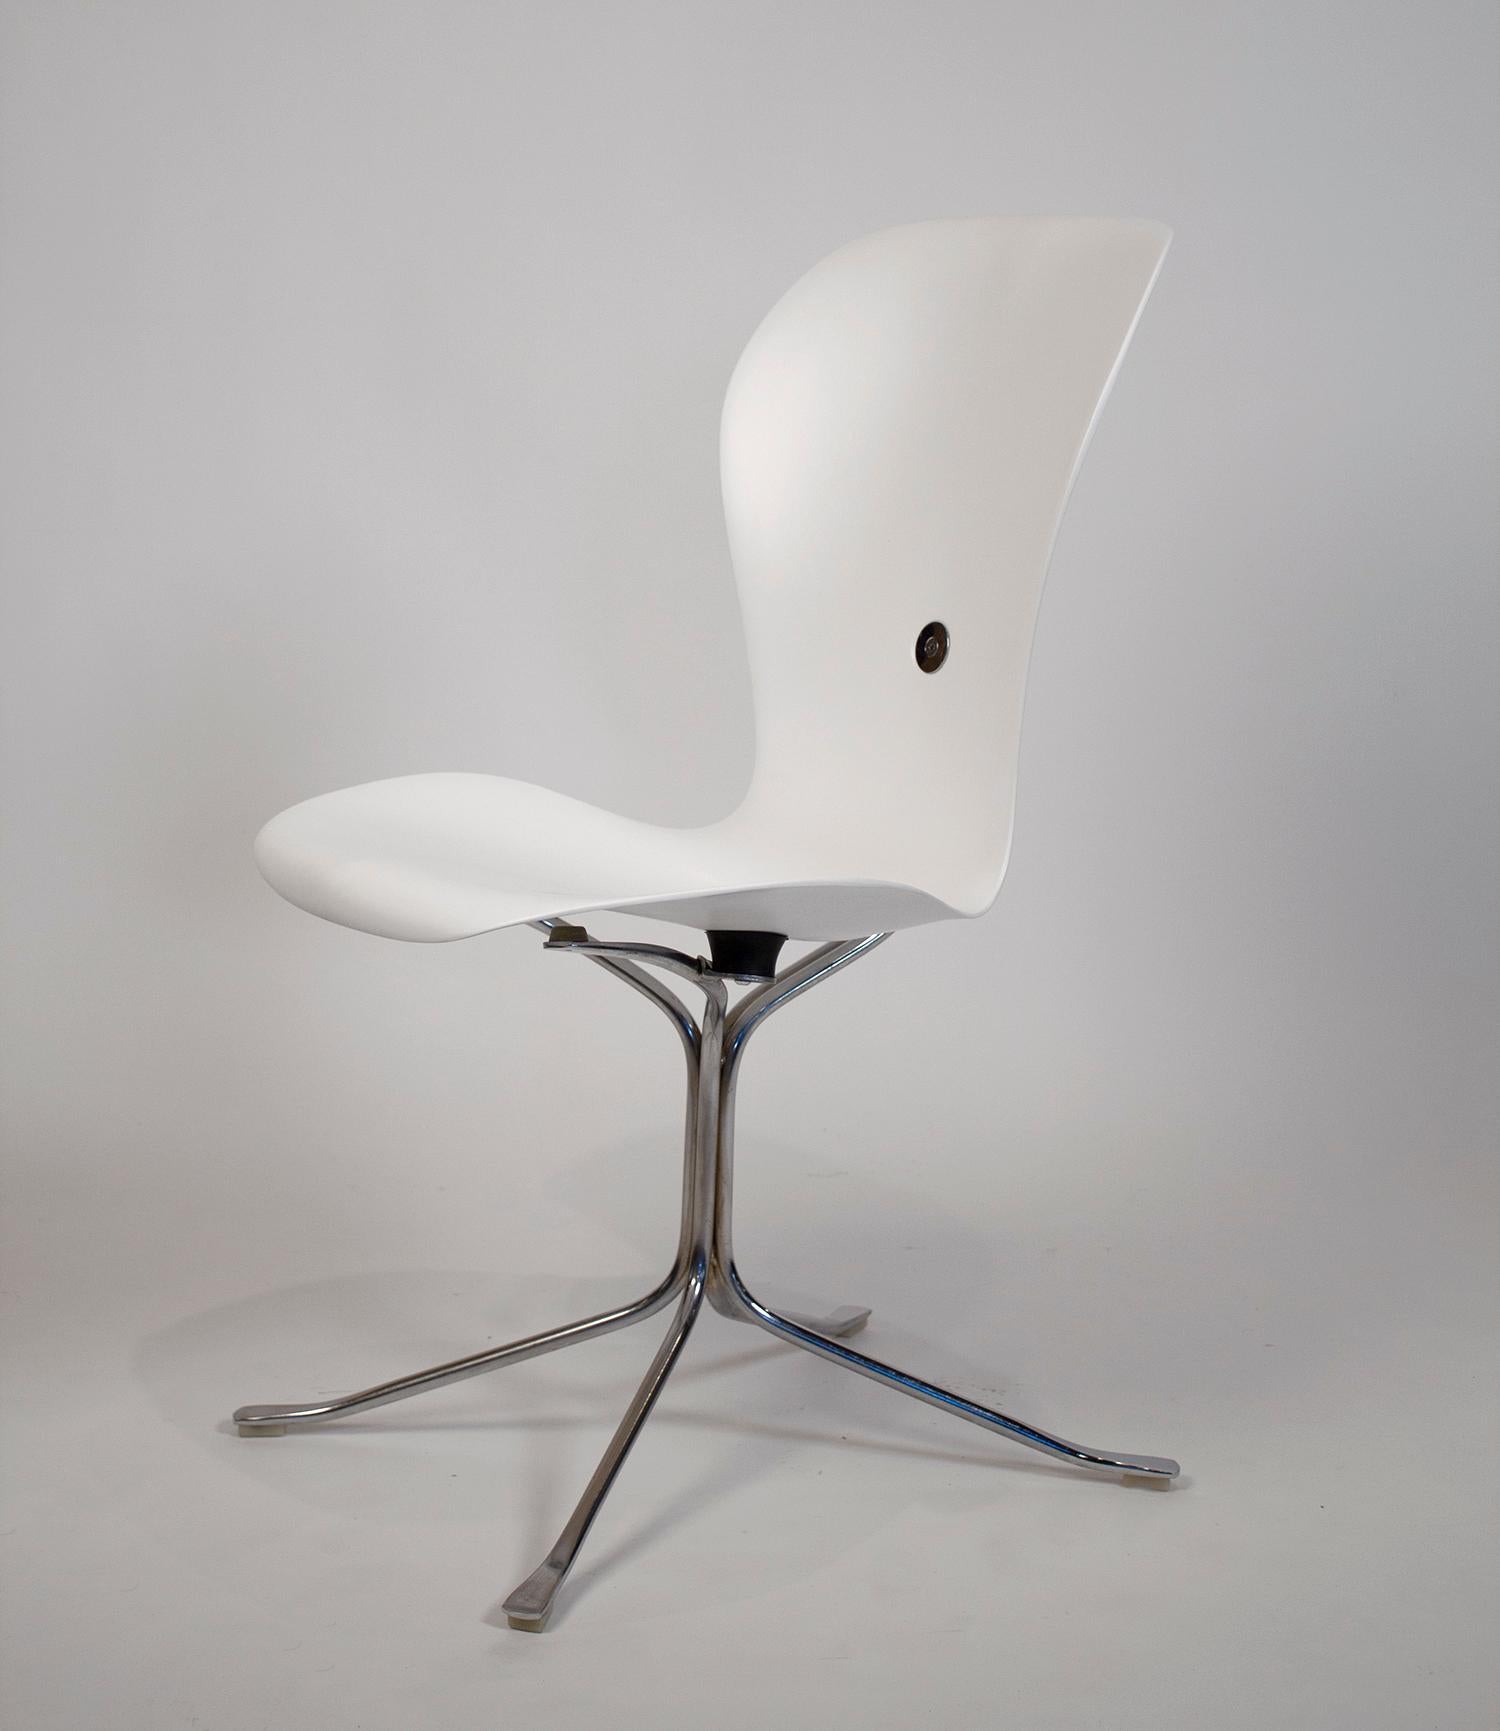 Der Ion Chair, auch bekannt als Space Needle Chair, wurde für die Aussichtsplattform der Space Needle auf der Weltausstellung in Seattle 1962 entworfen. Dieses Set aus sechs Stühlen wurde professionell in einem flachen, weißen Lack lackiert und ist